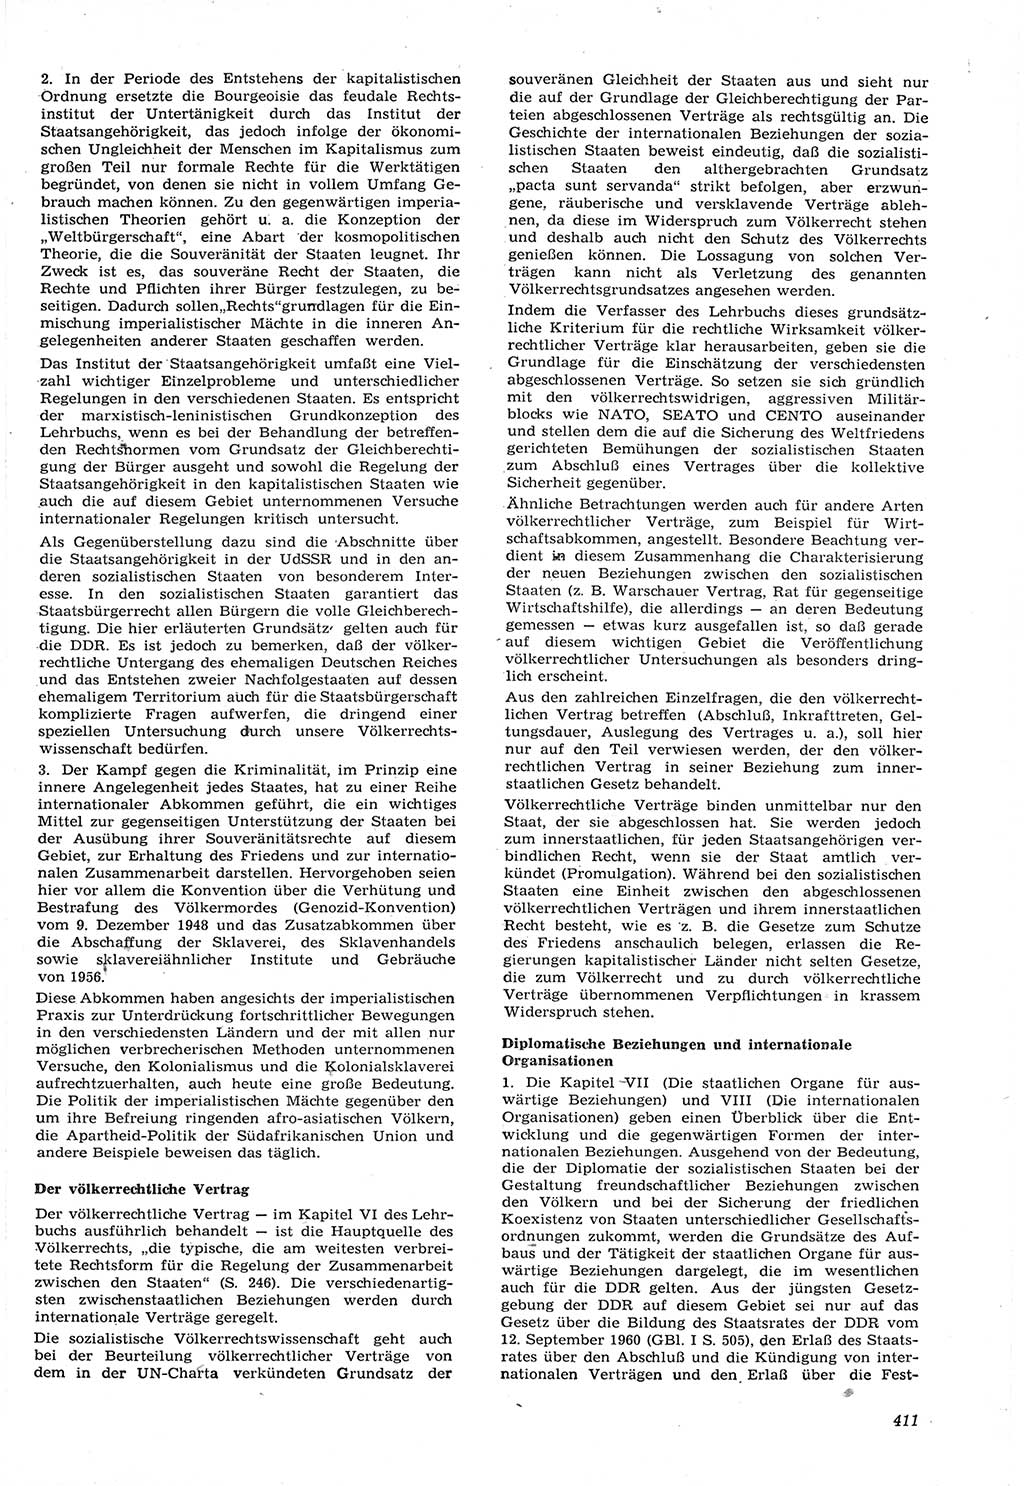 Neue Justiz (NJ), Zeitschrift für Recht und Rechtswissenschaft [Deutsche Demokratische Republik (DDR)], 15. Jahrgang 1961, Seite 411 (NJ DDR 1961, S. 411)